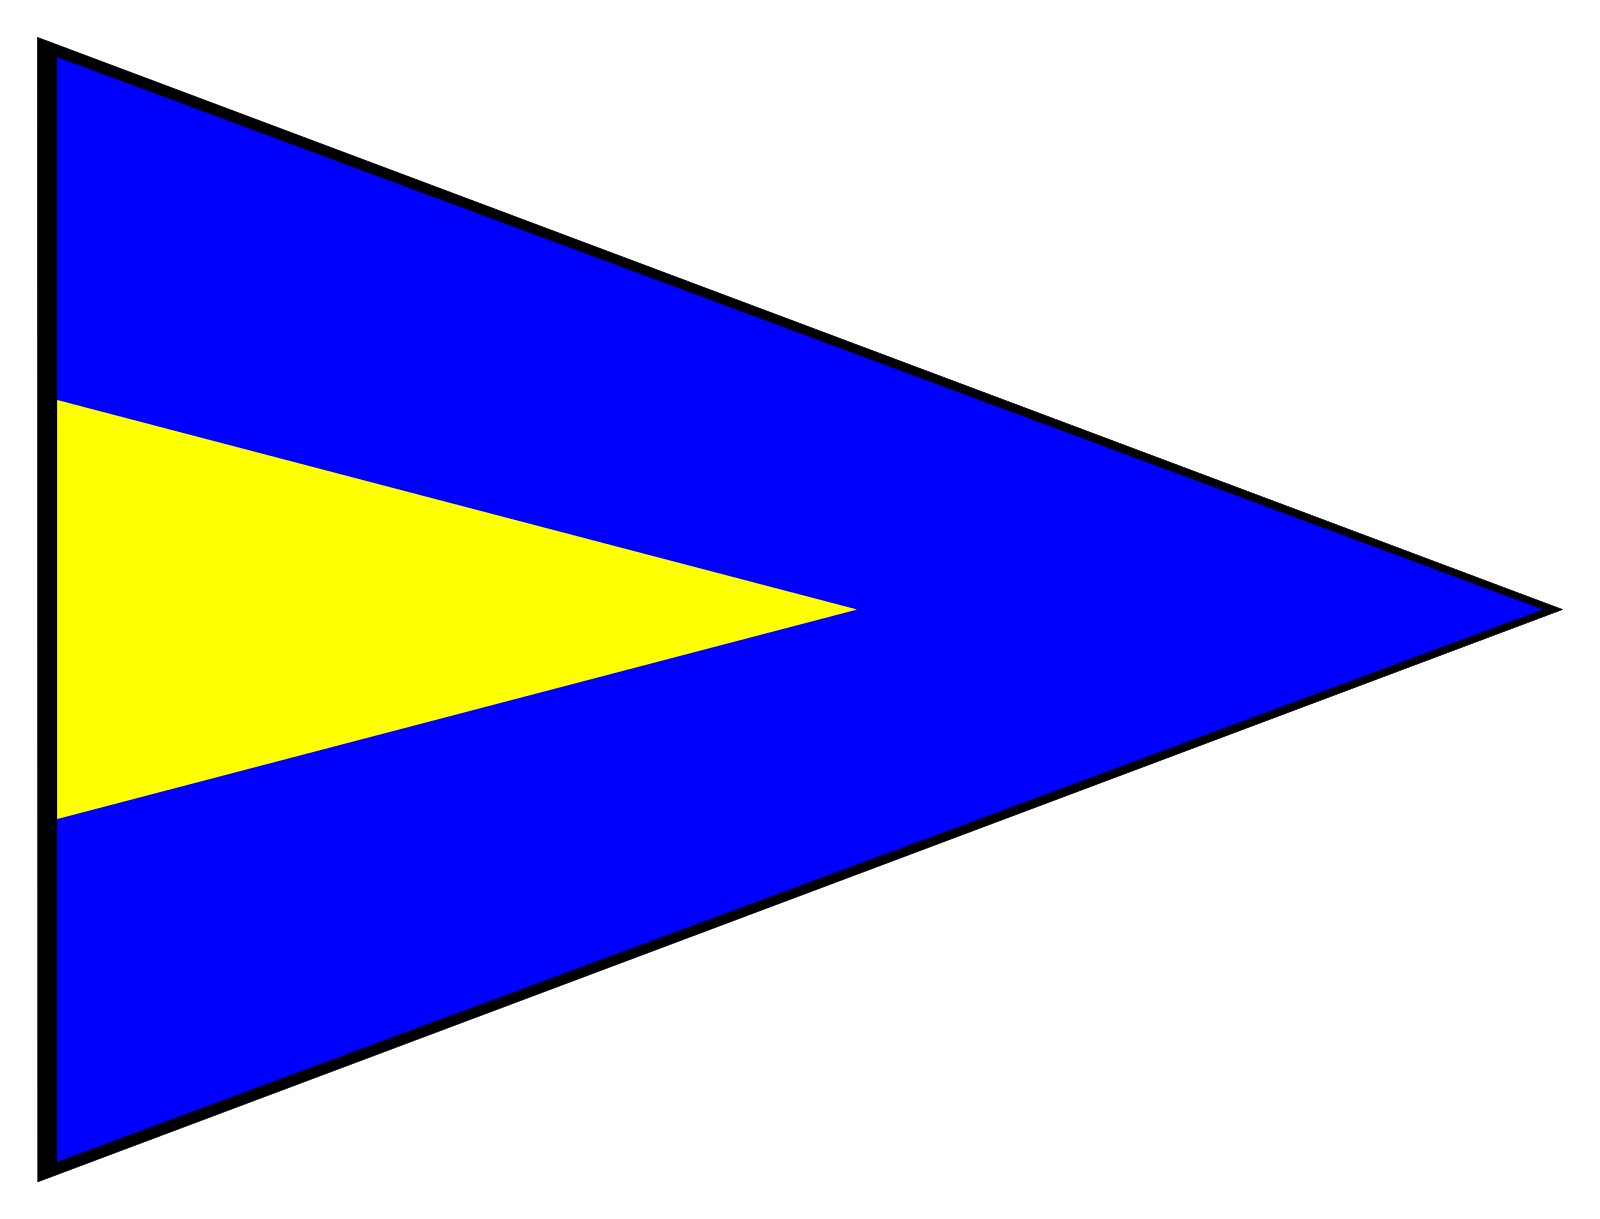 Свод сигналов флаги. Флаги международного свода сигналов вектор. Флаги МСС Юниформ. Голубой флаг с желтым треугольником. Международный свод сигналов.